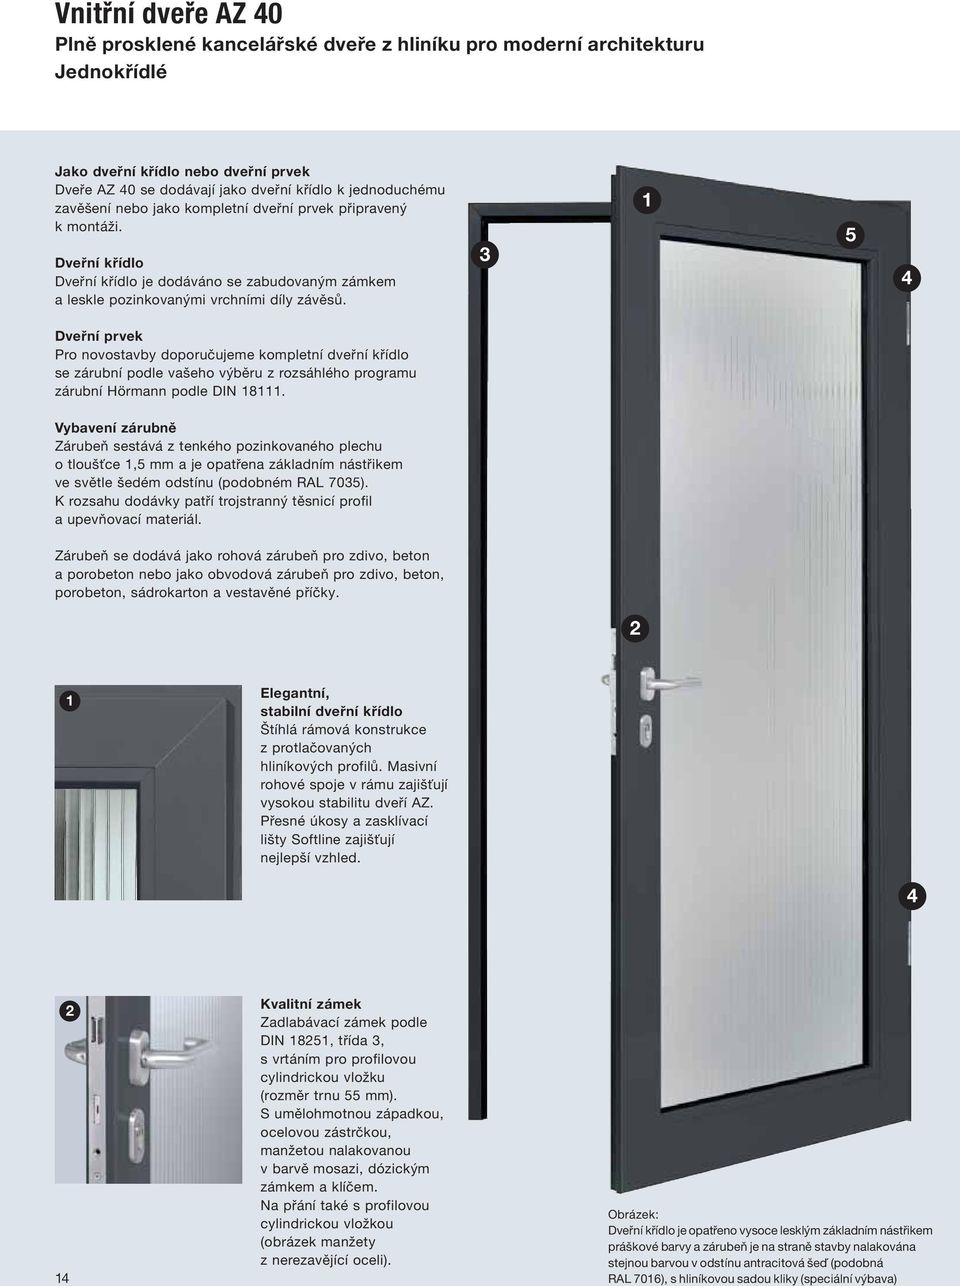 3 1 5 Dveřní prvek Pro novostavby doporučujeme kompletní dveřní křídlo se zárubní podle vašeho výběru z rozsáhlého programu zárubní Hörmann podle DIN 18111.